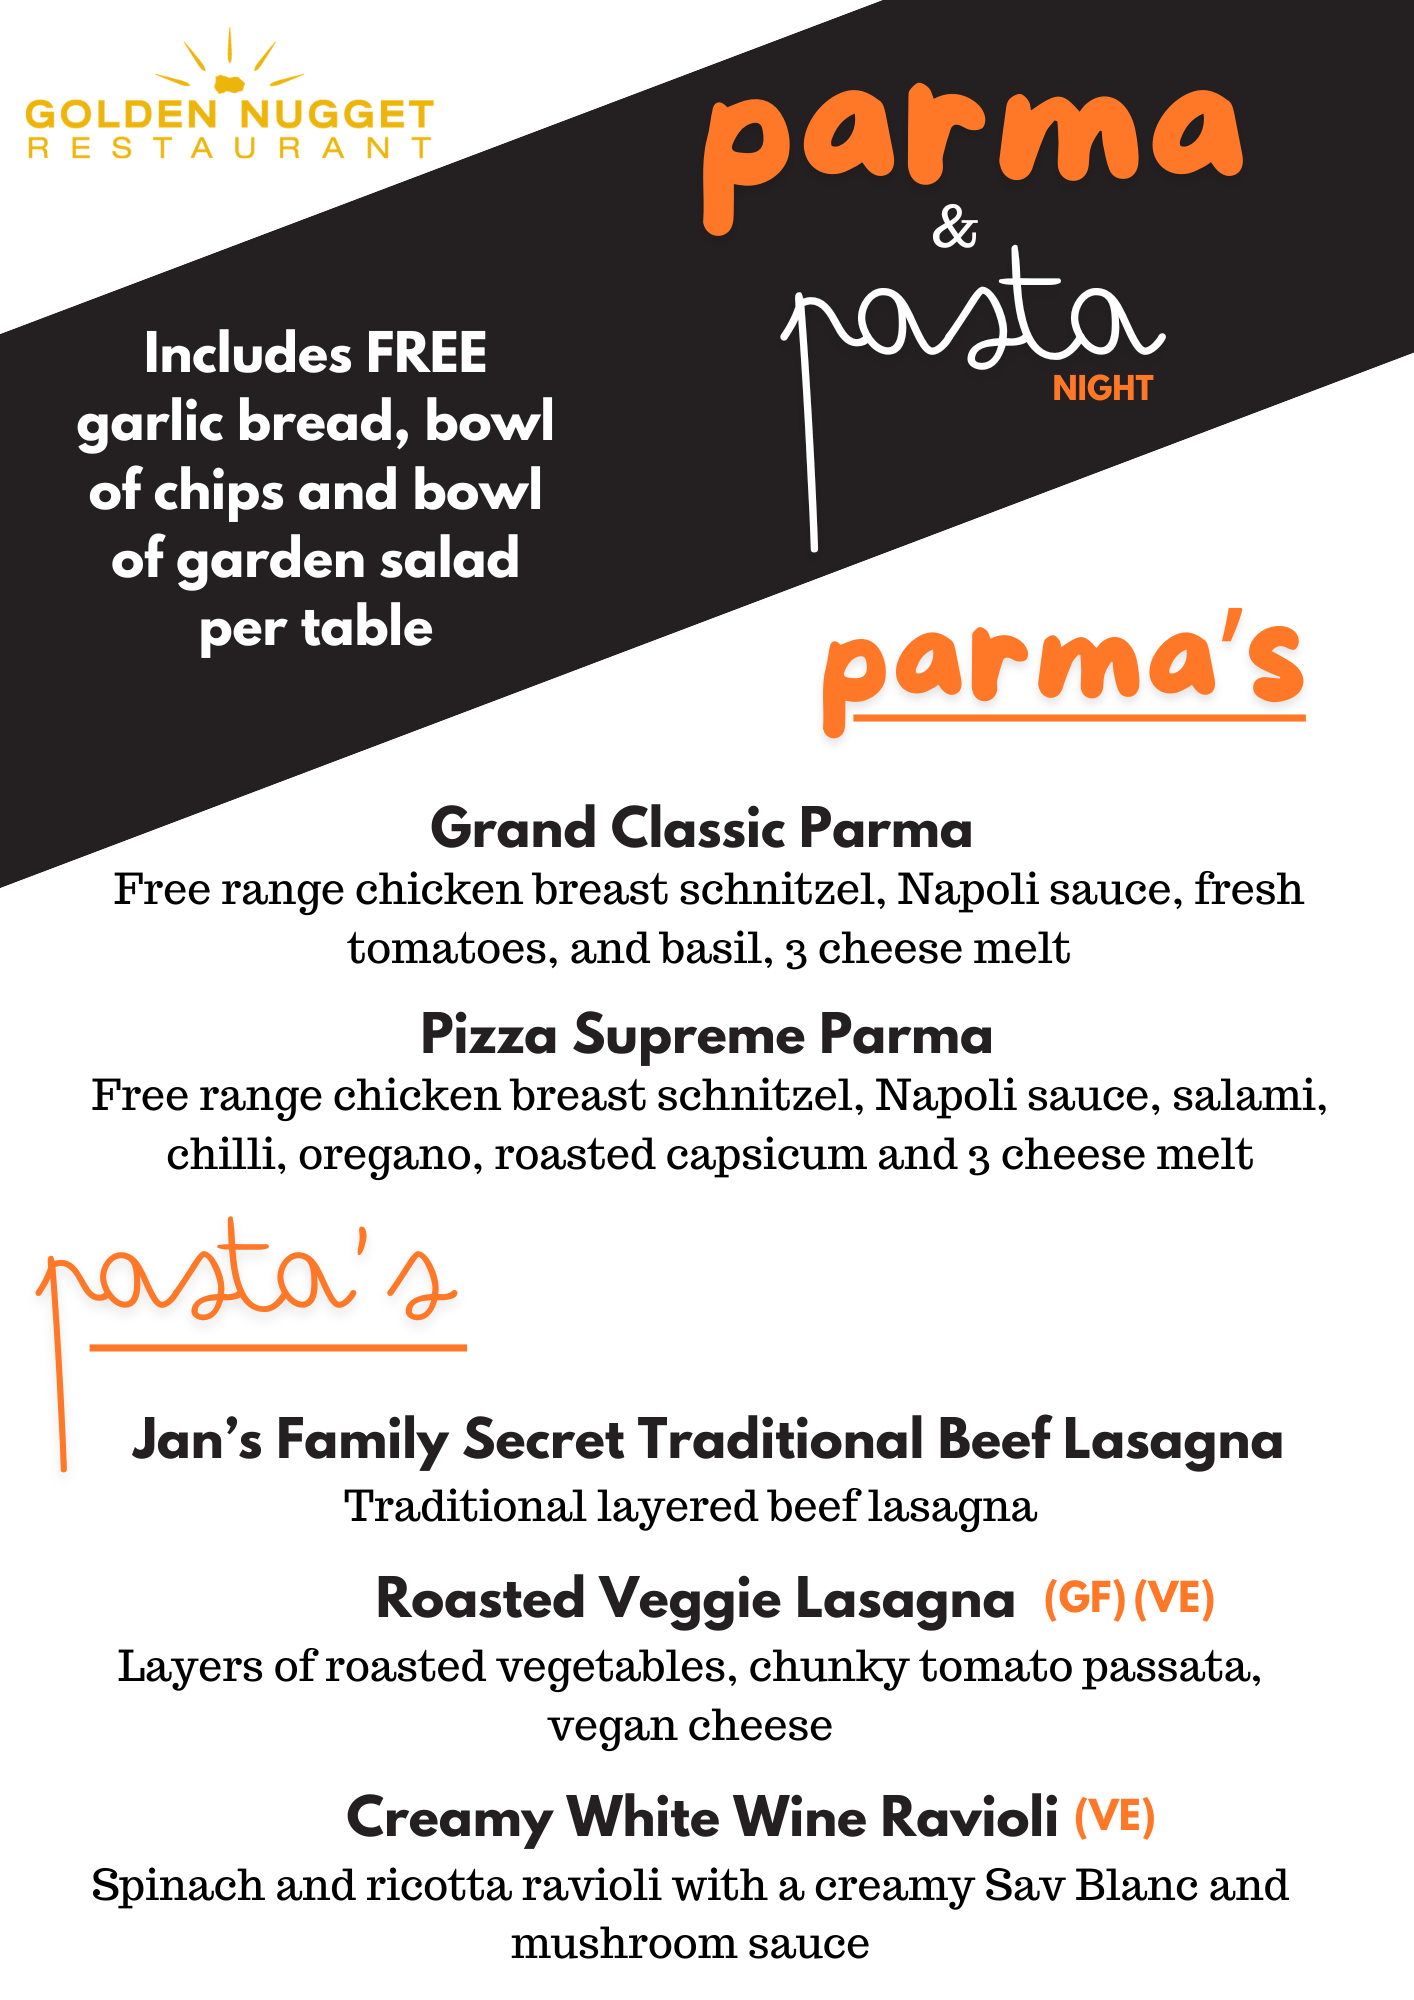 Parma & Pasta Night